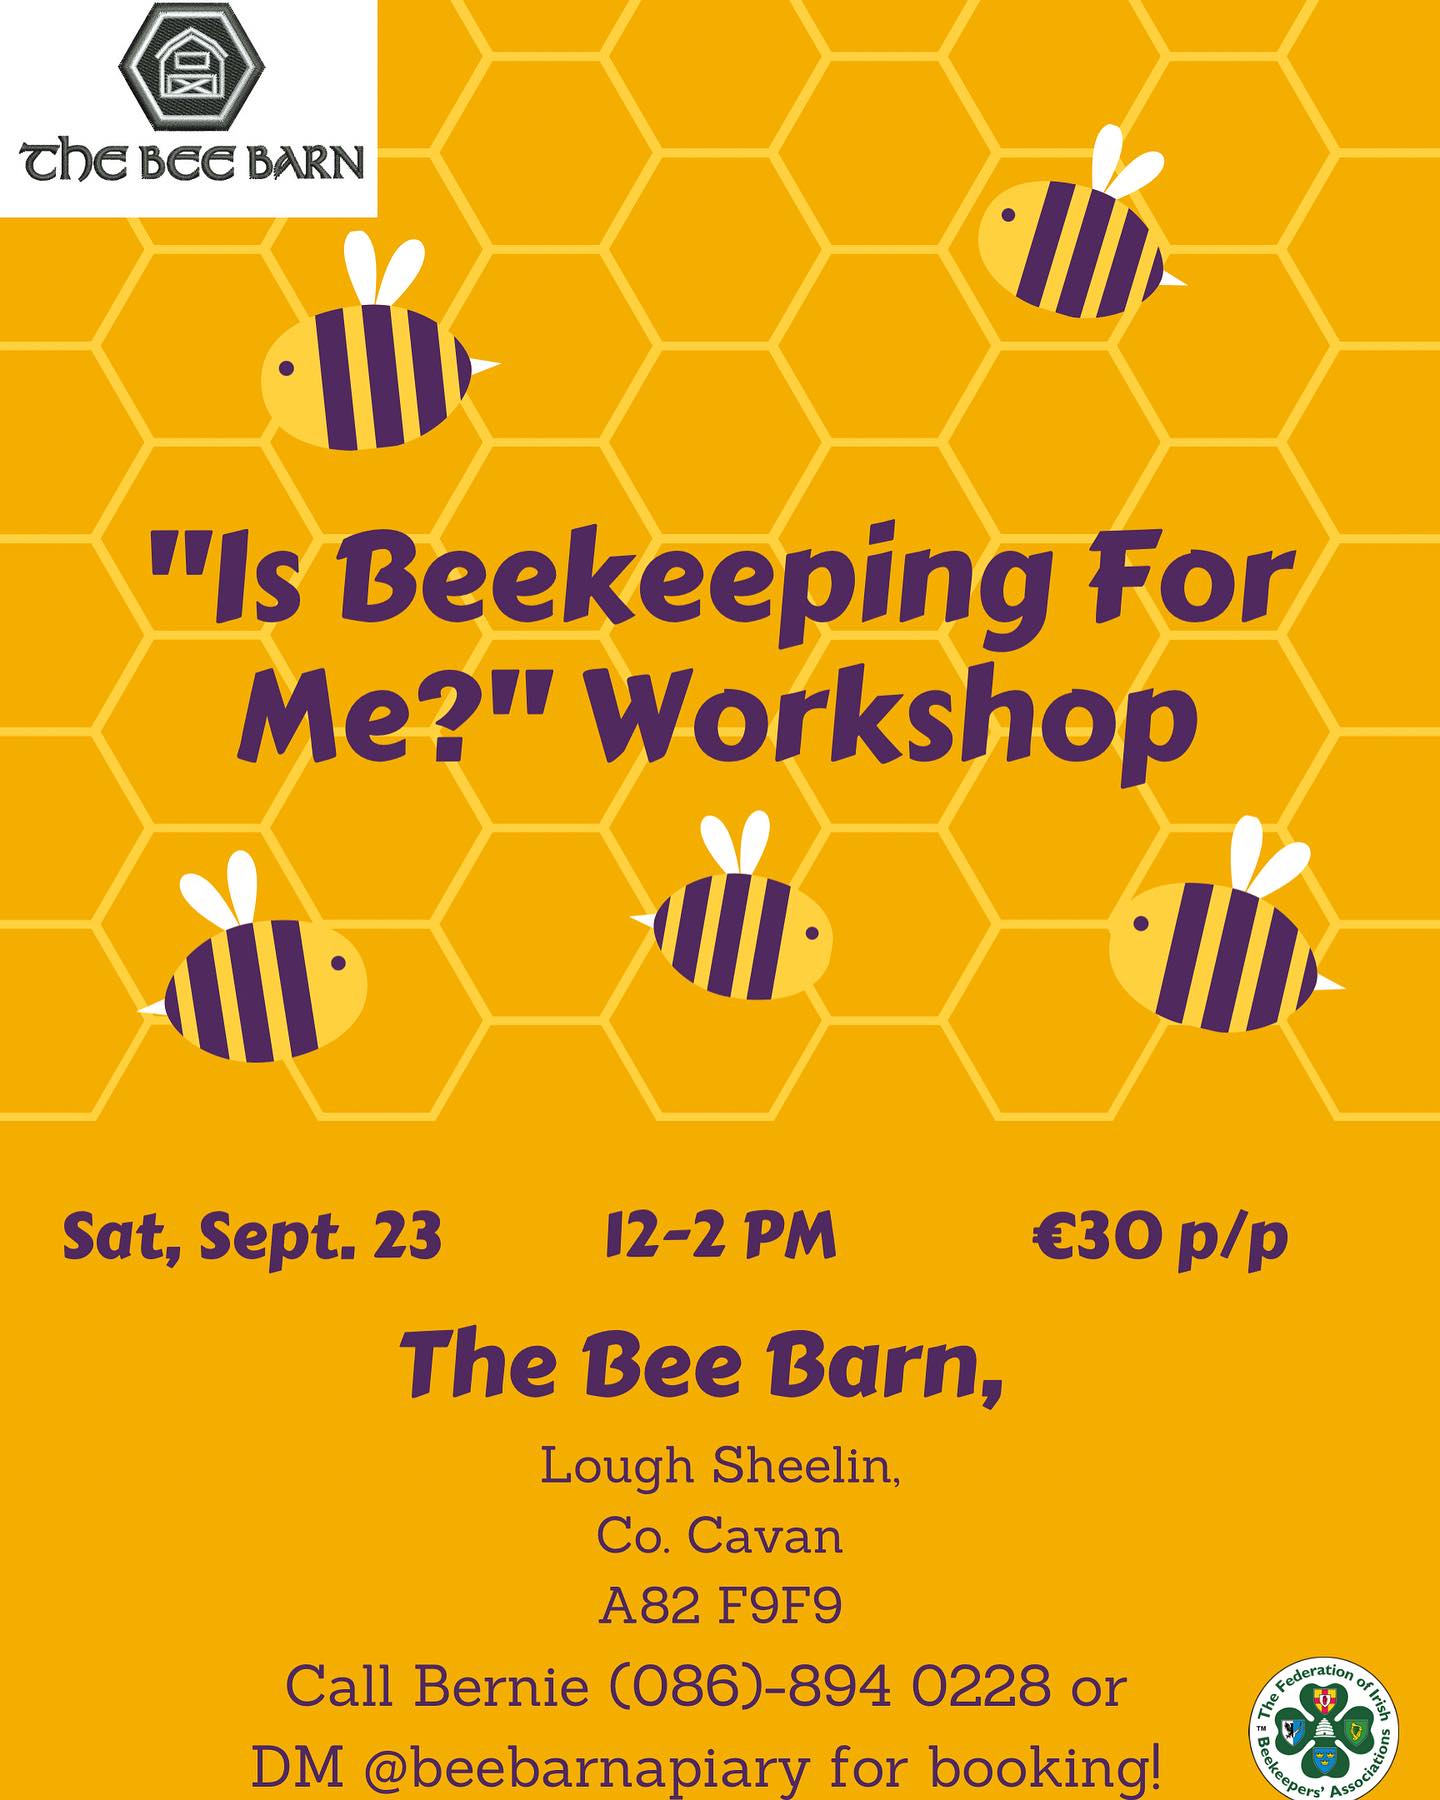 Is Beekeeping for Me? Beginners Beekeeping Workshop September 23 at The Bee Barn, Lough Sheelin, County Cavan Ireland